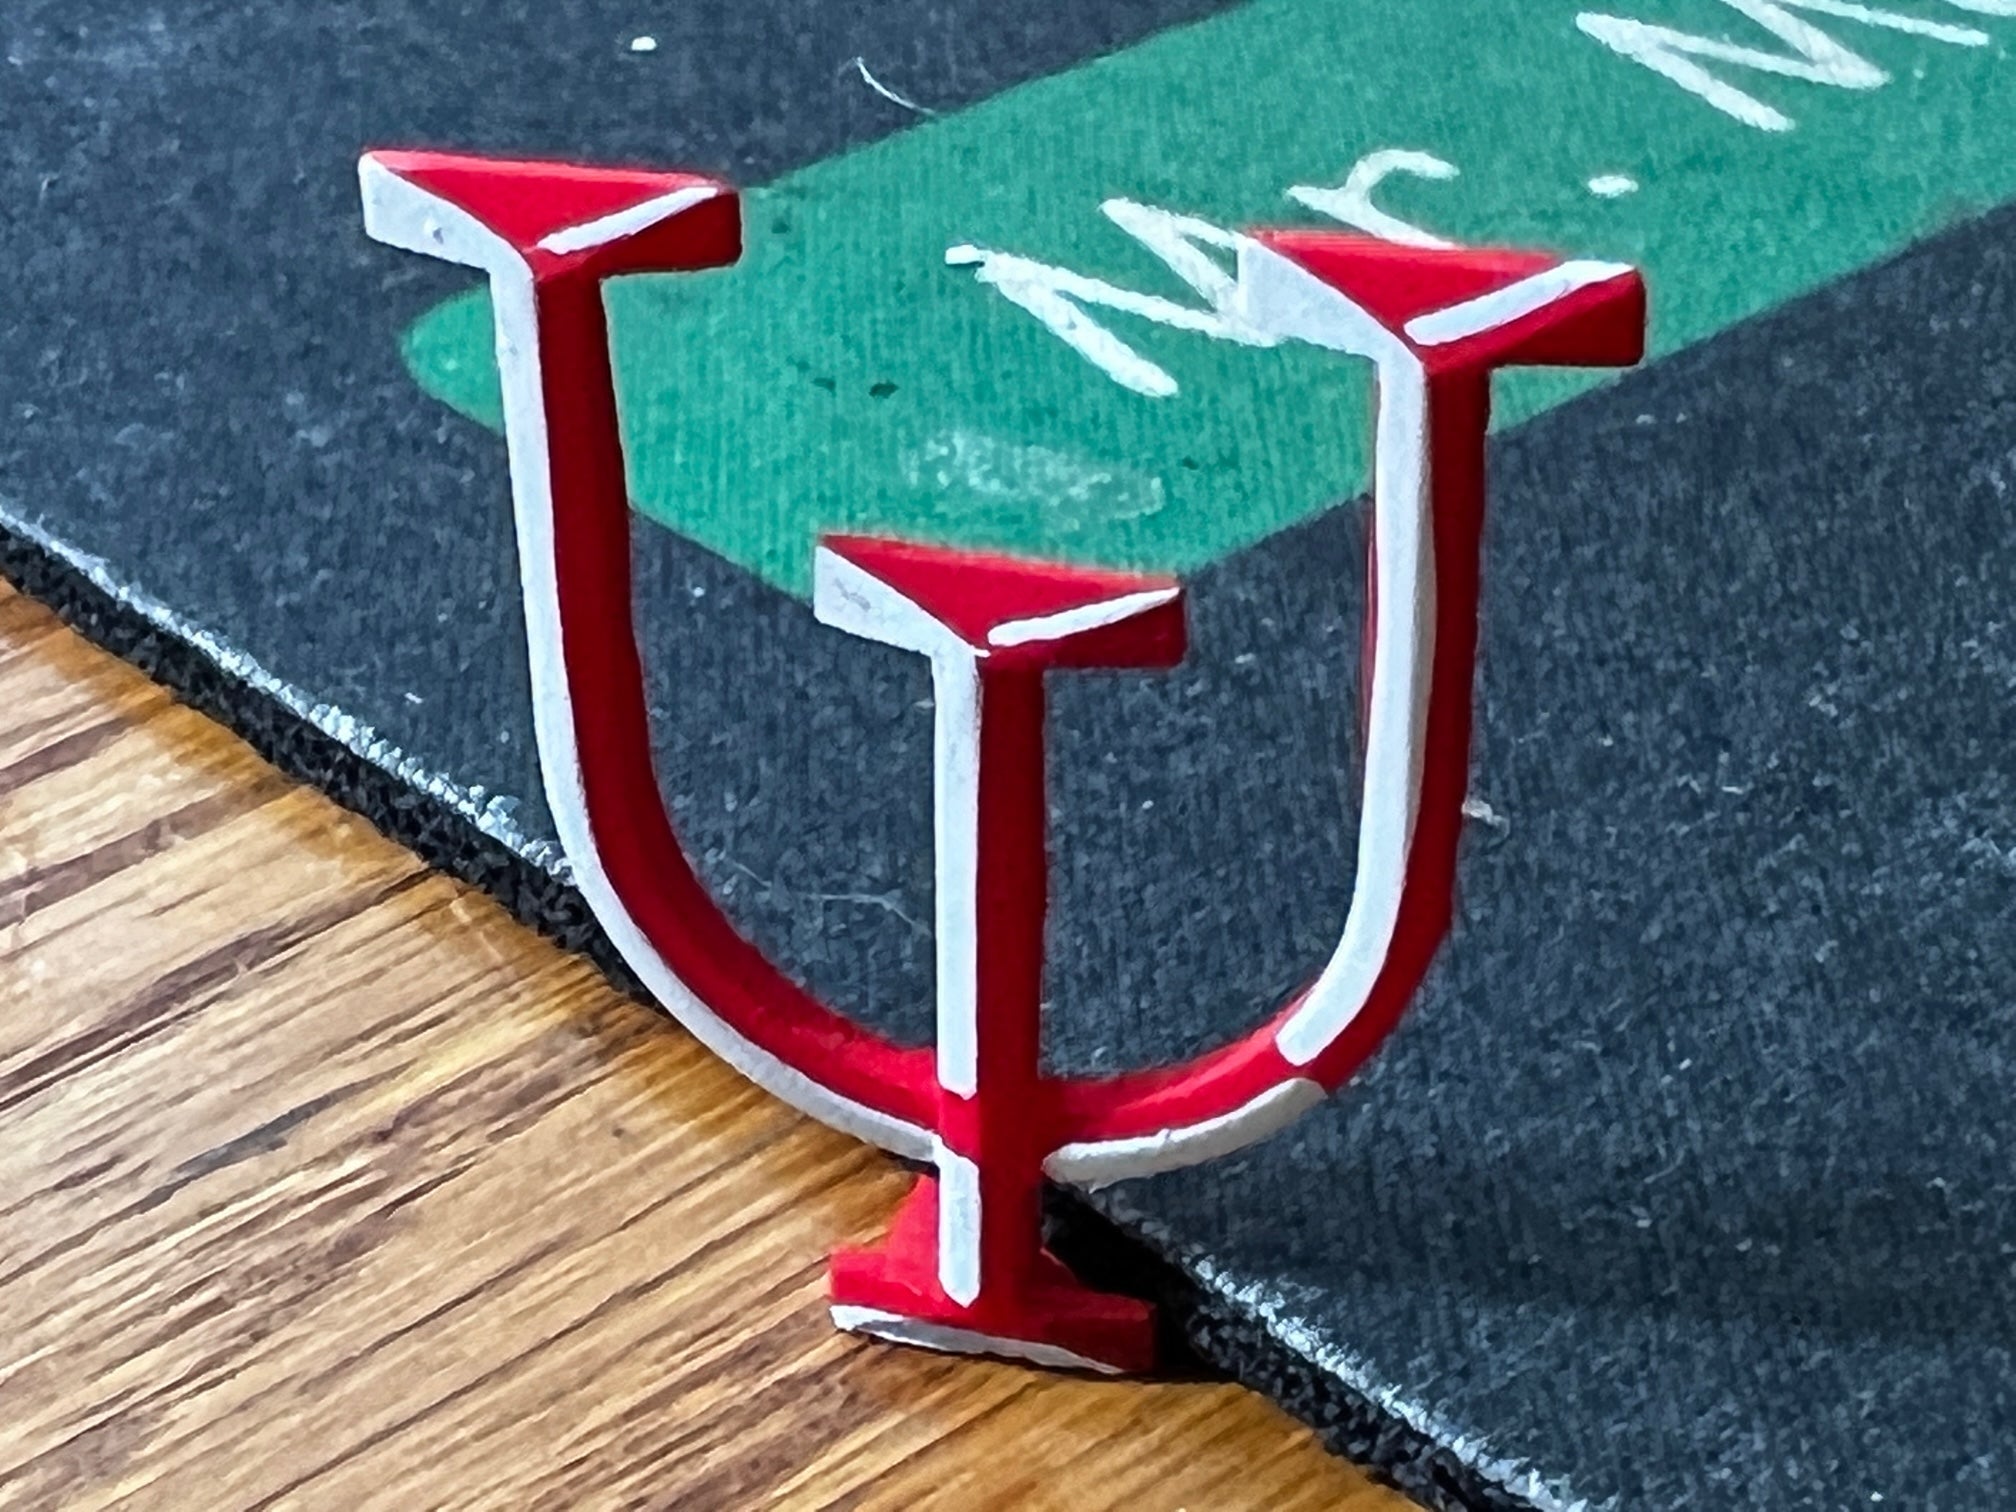 3D Printed - Sign Board "IU"